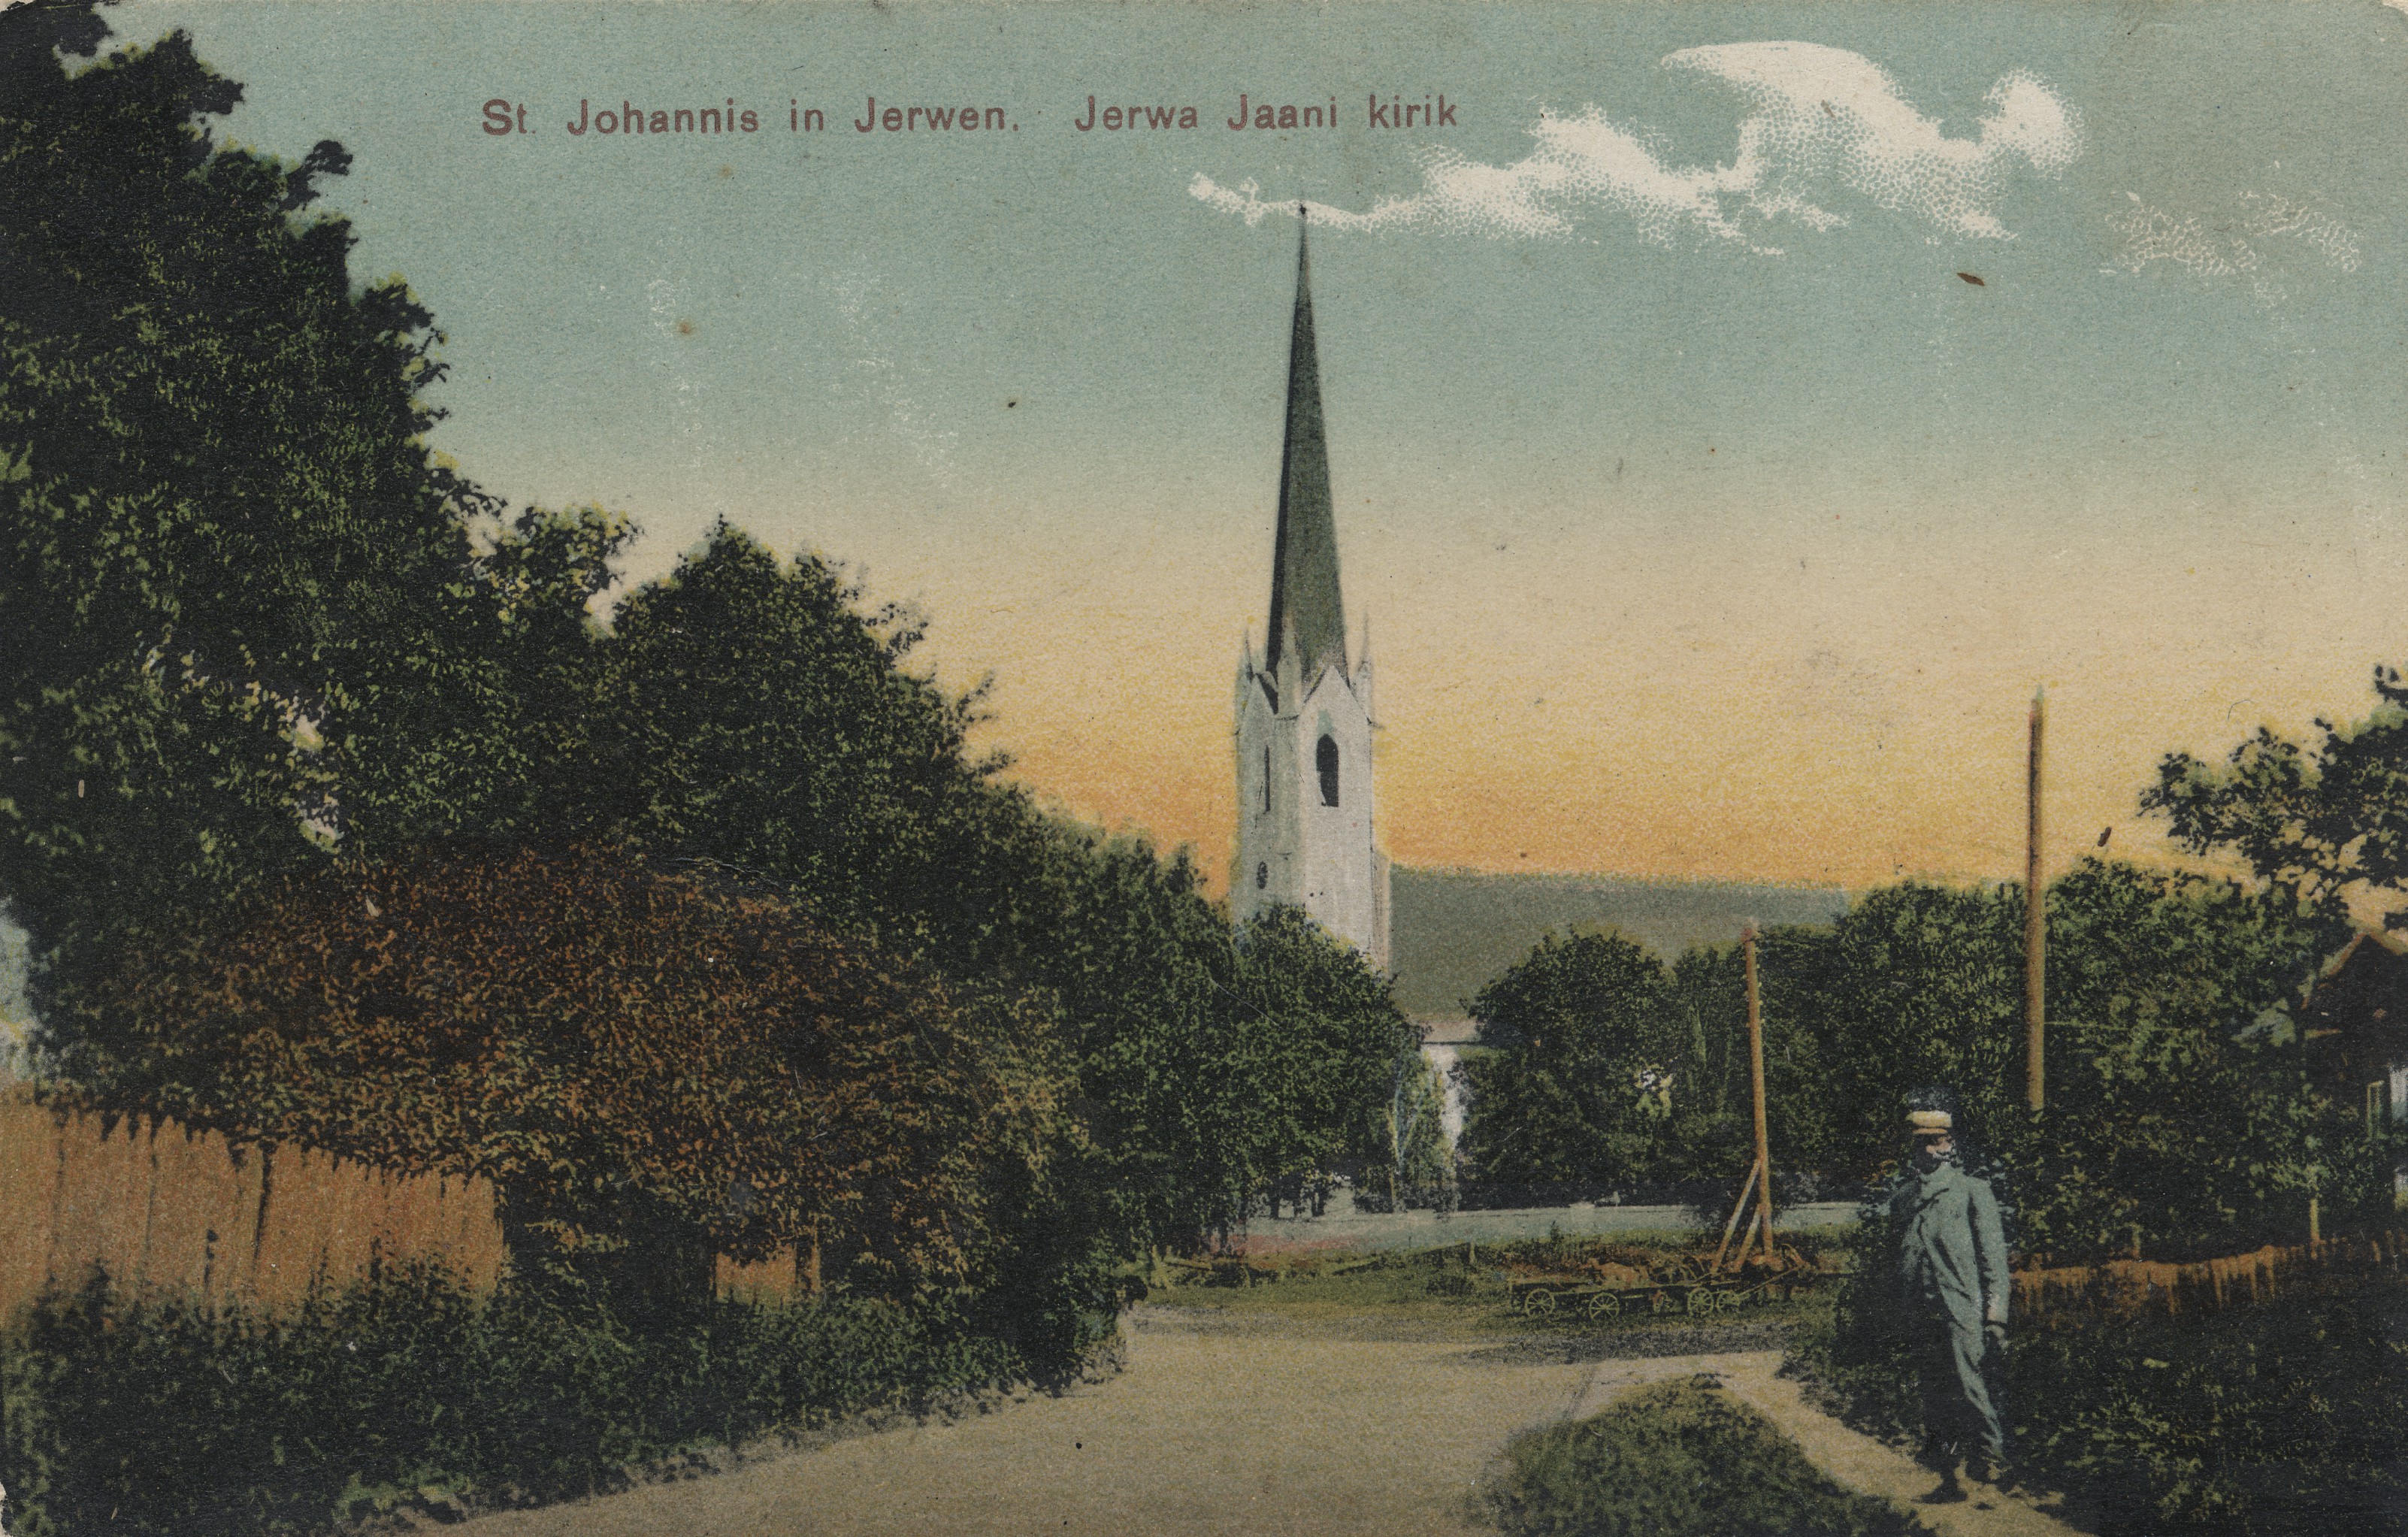 St. Johannis in Jerwen : Jerwa Jaani Church